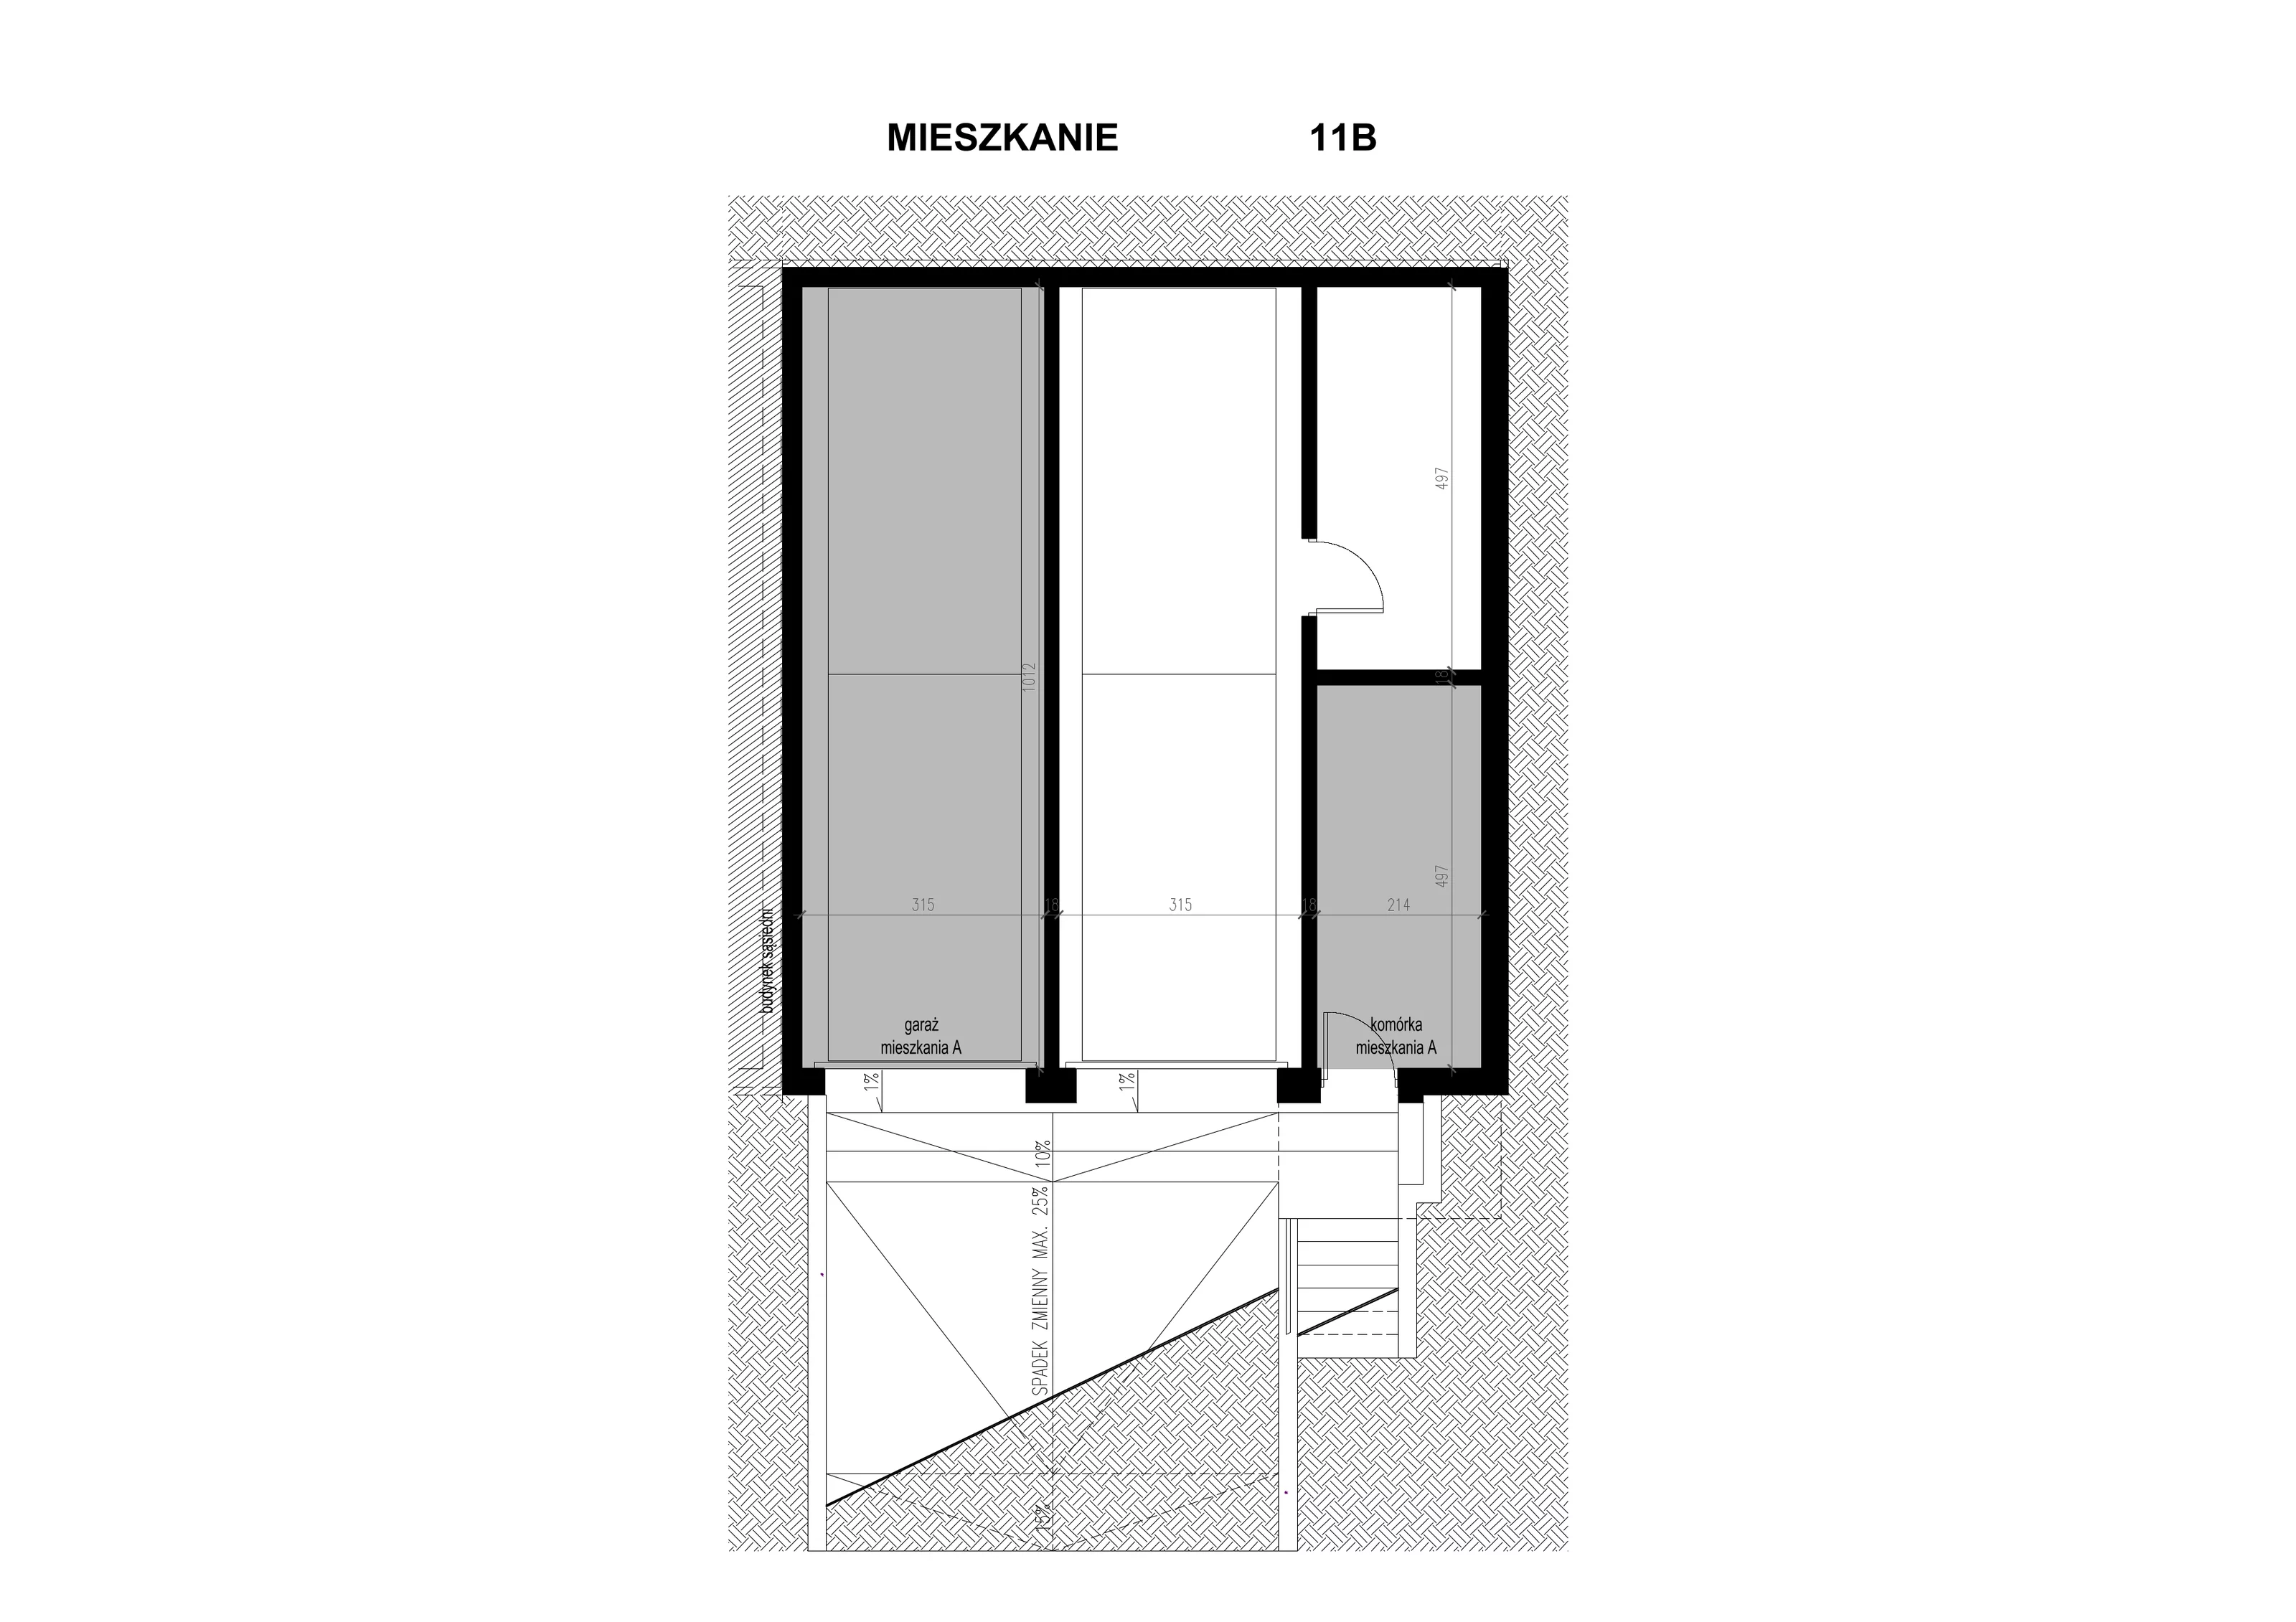 Apartament 82,75 m², piętro 1, oferta nr 1.11B, Osiedle BO, Wrocław, Kowale, ul. Bociana